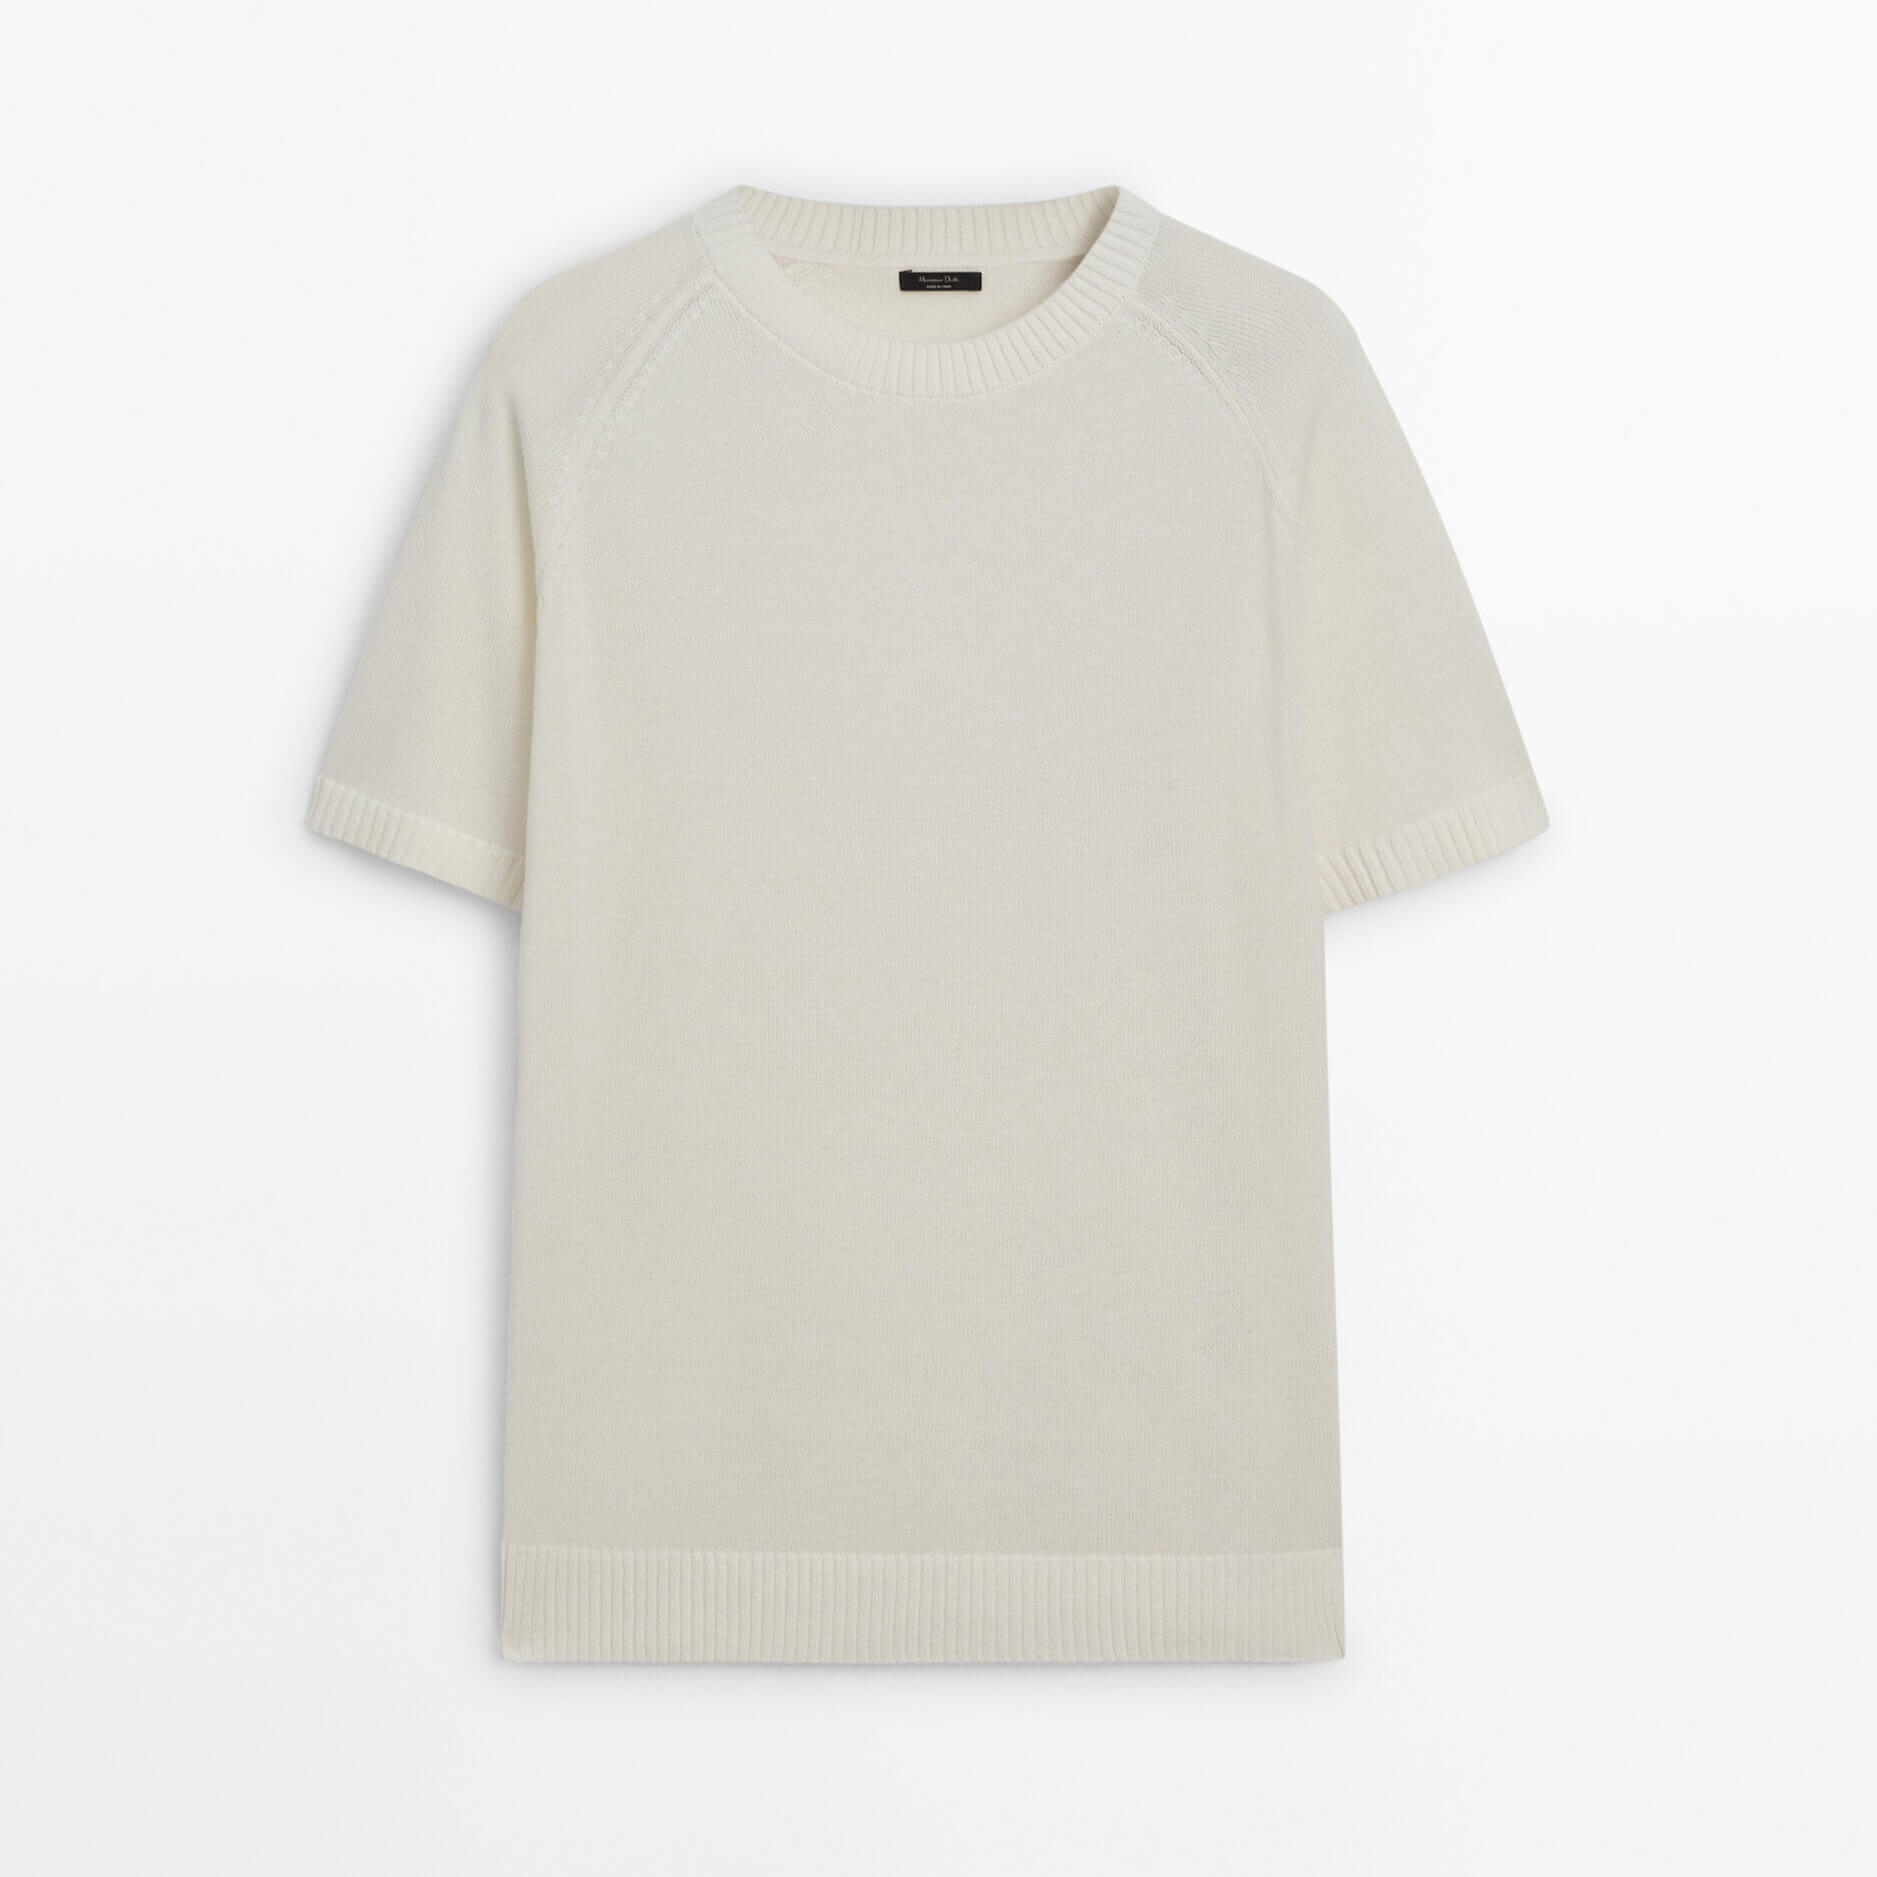 Футболка Massimo Dutti Short Sleeve Knit With Cotton, светло-бежевый футболка с коротким рукавом новинка лета 2021 вязаная корейская свободная приталенная рубашка с круглым вырезом джокер пуловер куртка для